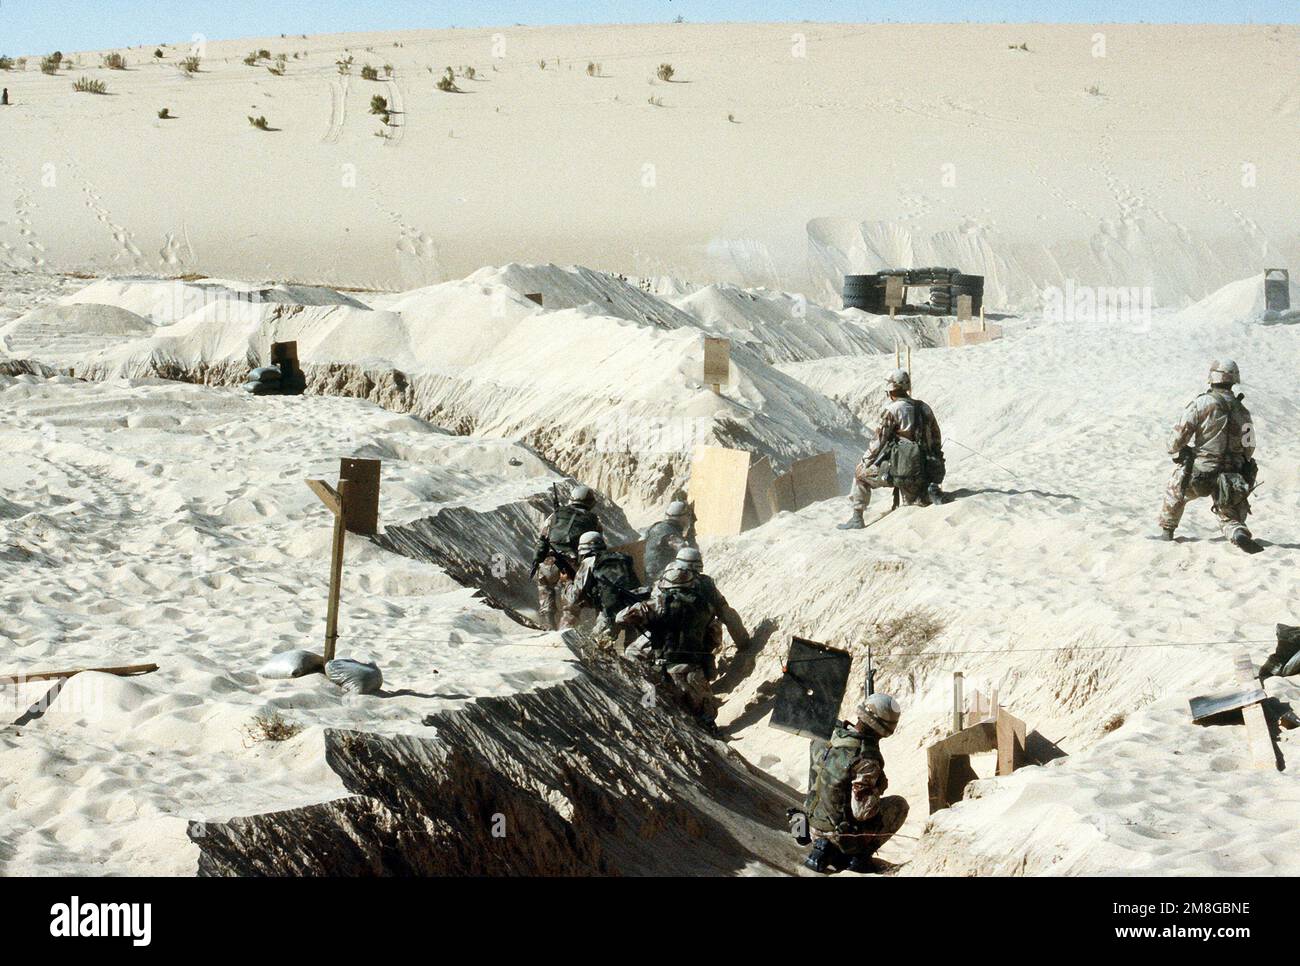 Soldats de Co. C, 1st BN., 505th Parachute Inf. Rég. Se déplacer dans une tranchée pendant les manœuvres, dans le cadre de l'opération Desert Shield. Objet opération/série : BOUCLIER DU DÉSERT pays : Arabie saoudite (SAU) Banque D'Images